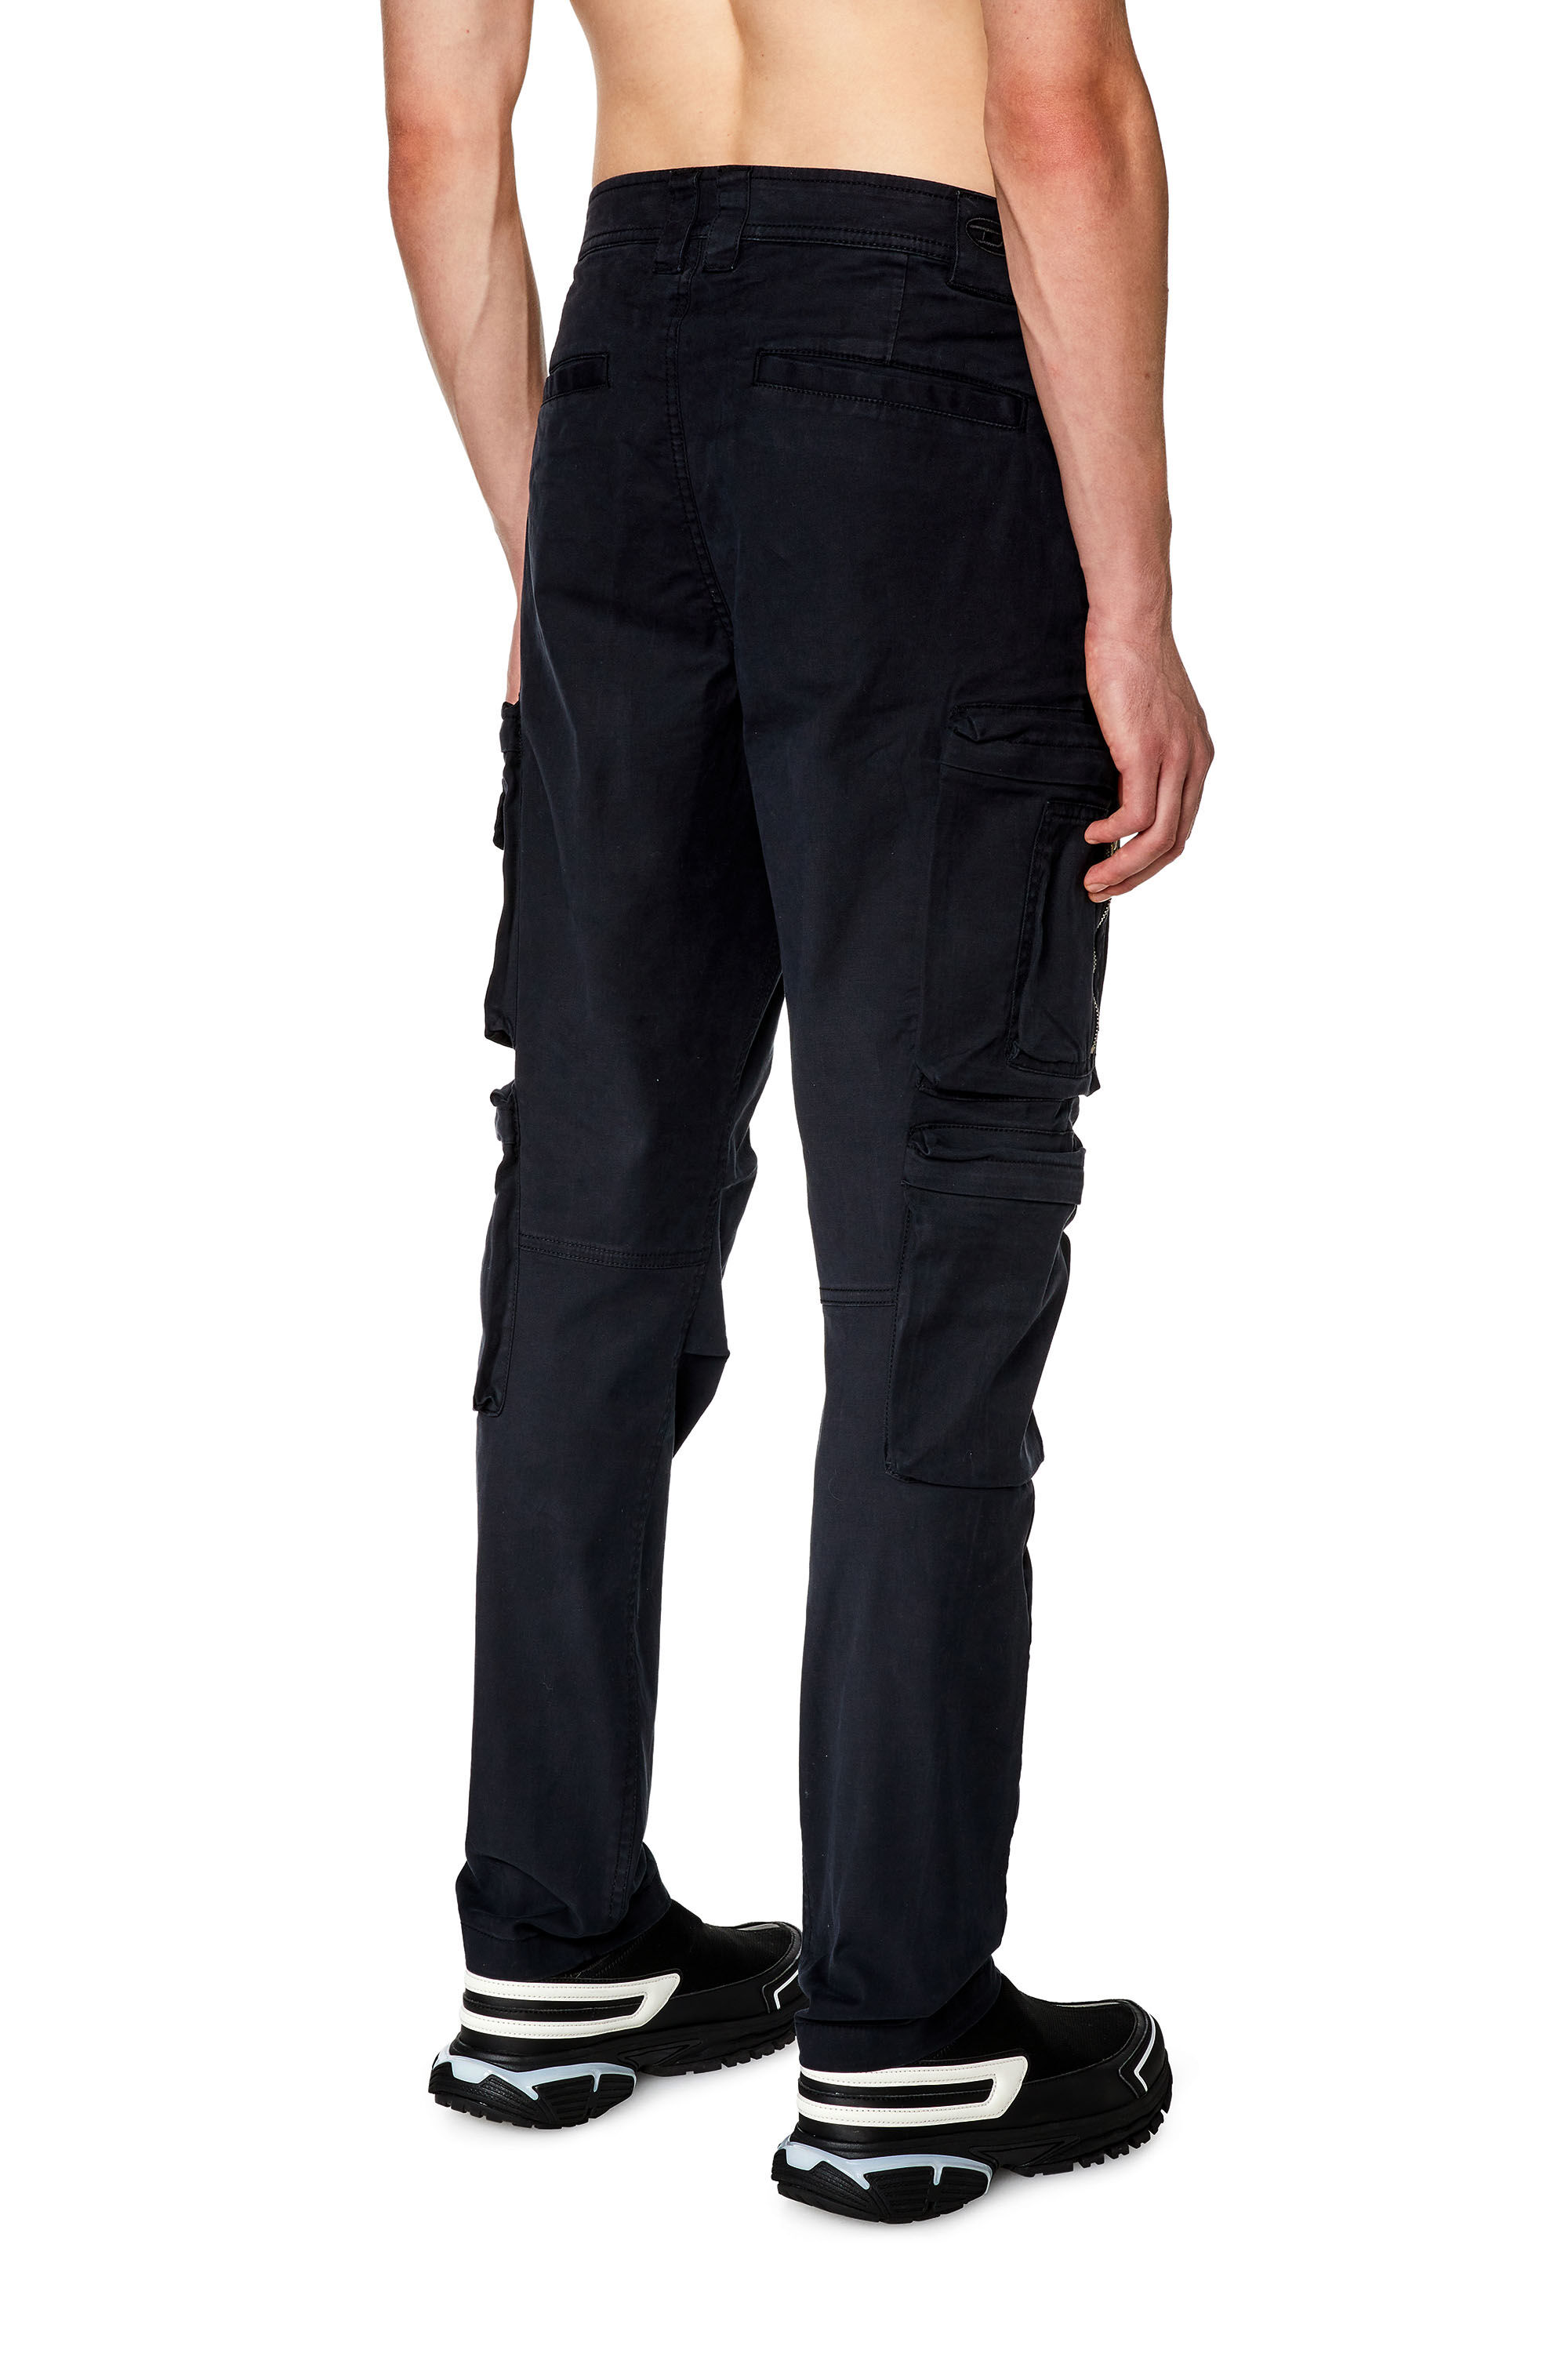 Men's Cargo pants with zip pocket | P-ARLEM Diesel